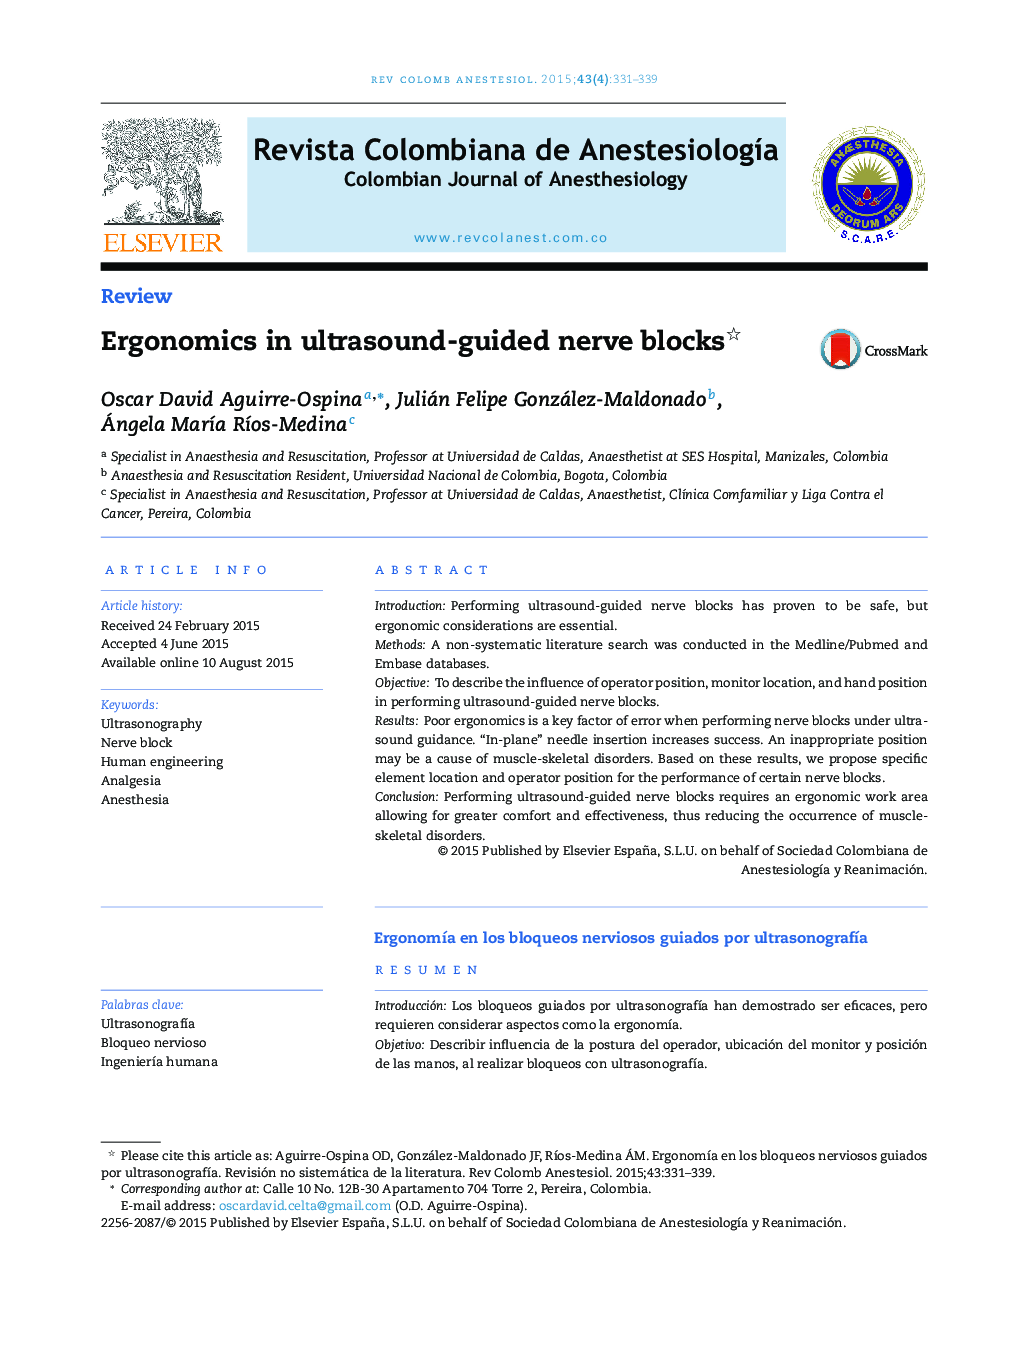 ارگونومی در بلوک های عصبی تحت هدایت سونوگرافی 